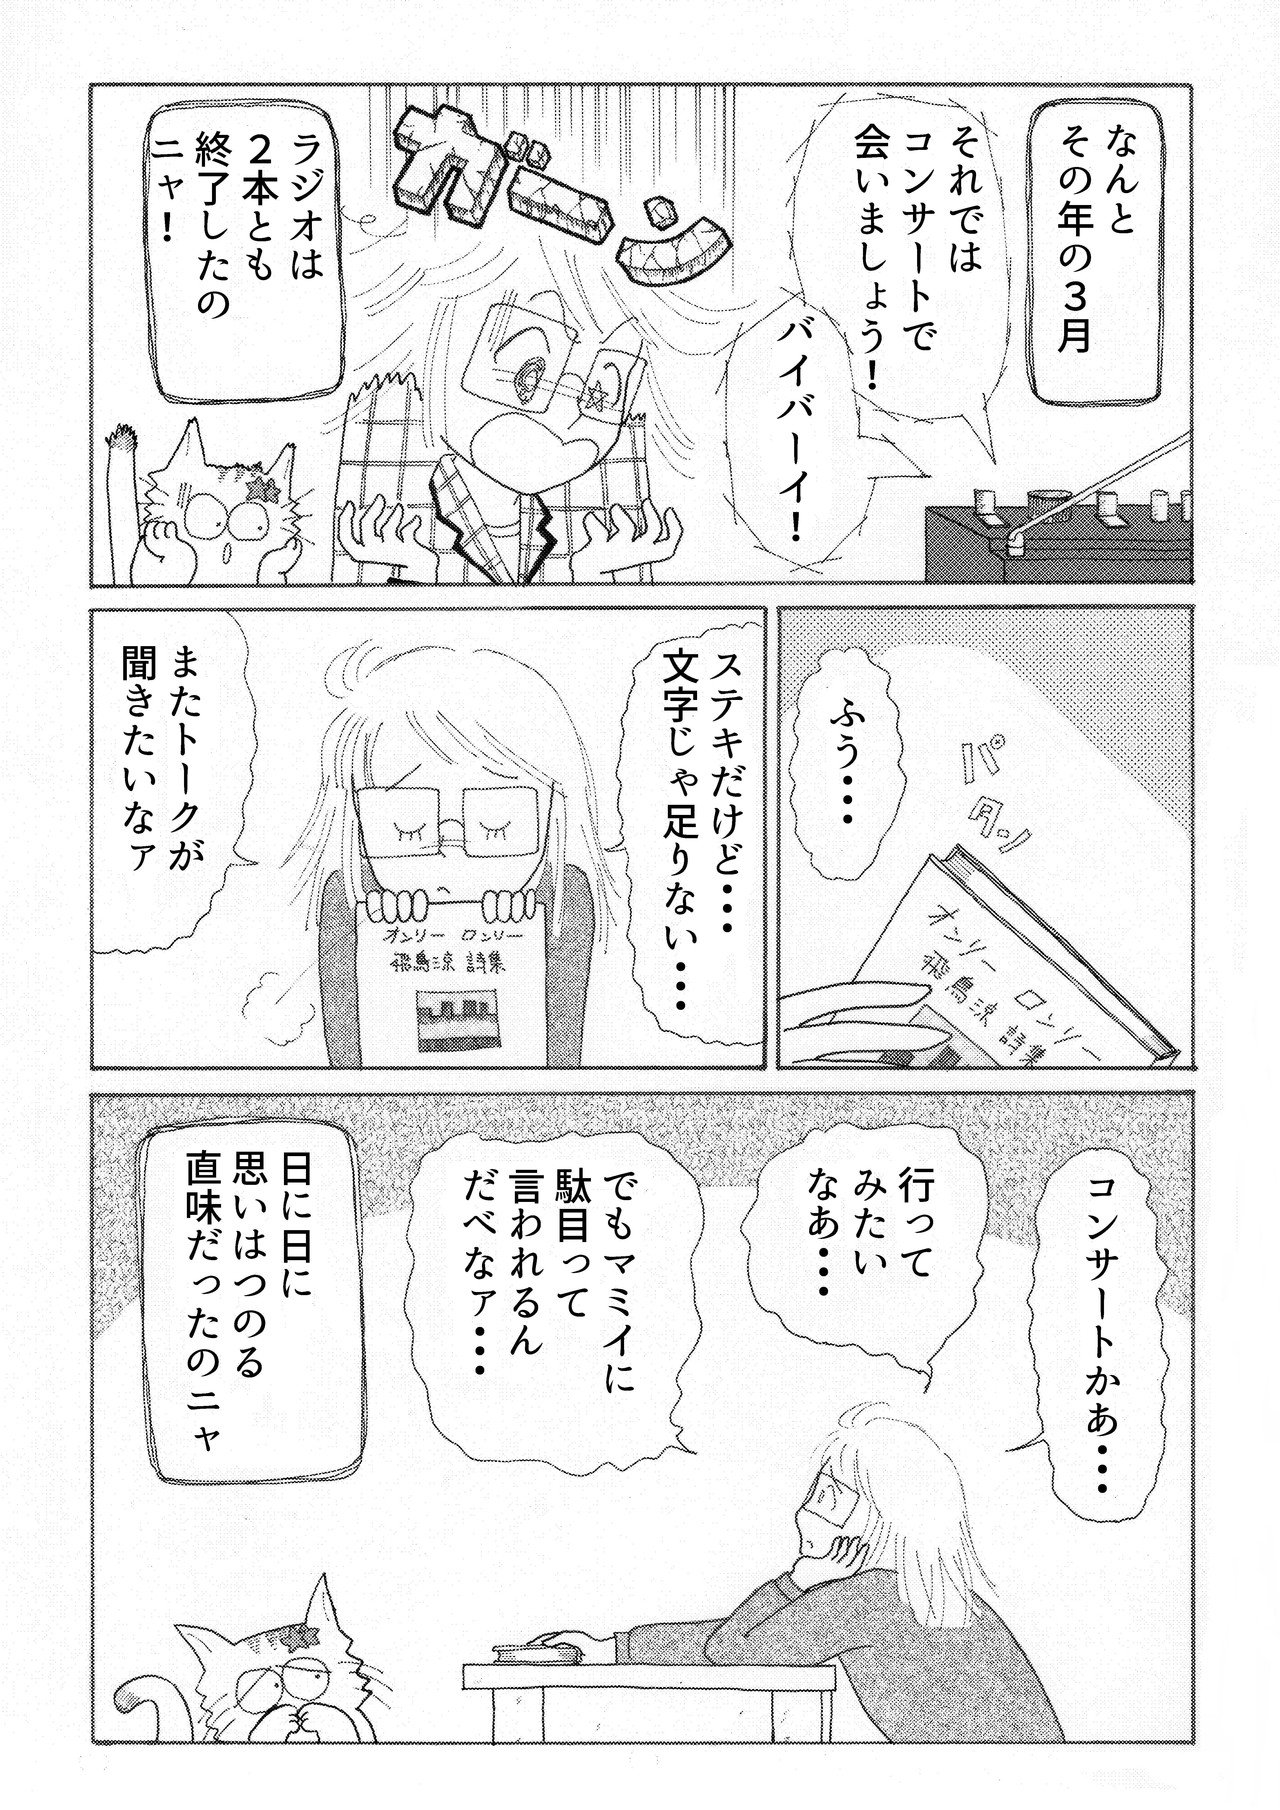 コミック4-12c-min